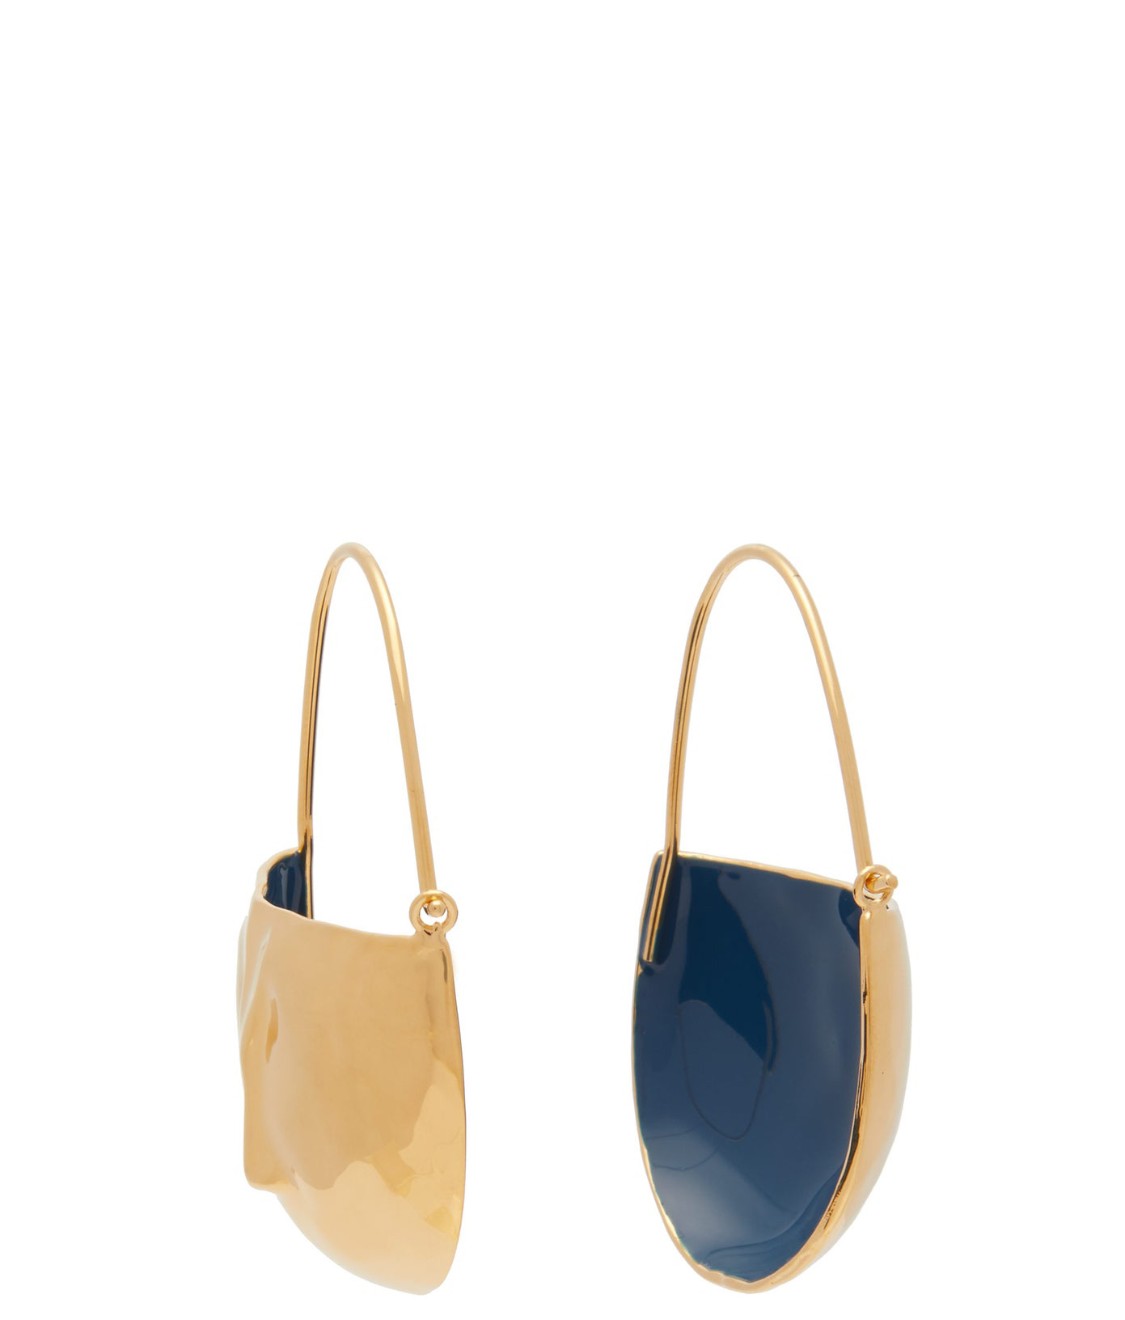 shop Marni  Bijoux: Bijoux Marni, orecchini a monachella a forma di faccia in ottone effetto martellato fuori dorato e smaltato in blu all'interno.

Composizione: 100% ottone. number 1508